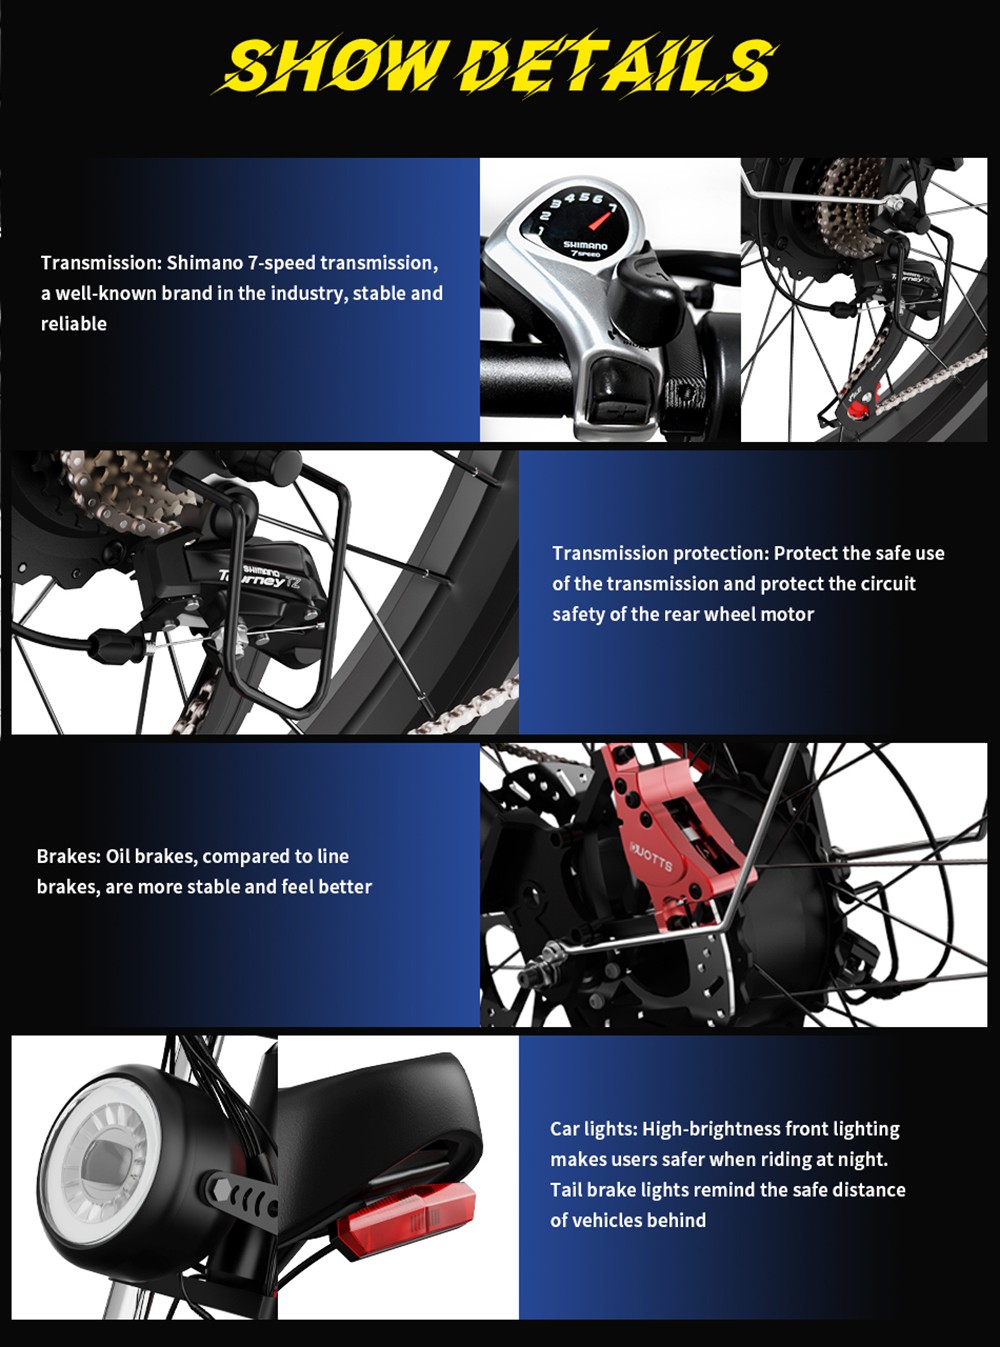 Bici elettrica DUOTTS N26, motori 750 W*2, velocità massima 55 km/h, pneumatici gonfiabili 26*4.0', batteria Samsung 48 V 20 Ah, autonomia 120-150 km, Shimano 7 velocità, carico massimo 200 kg Nero